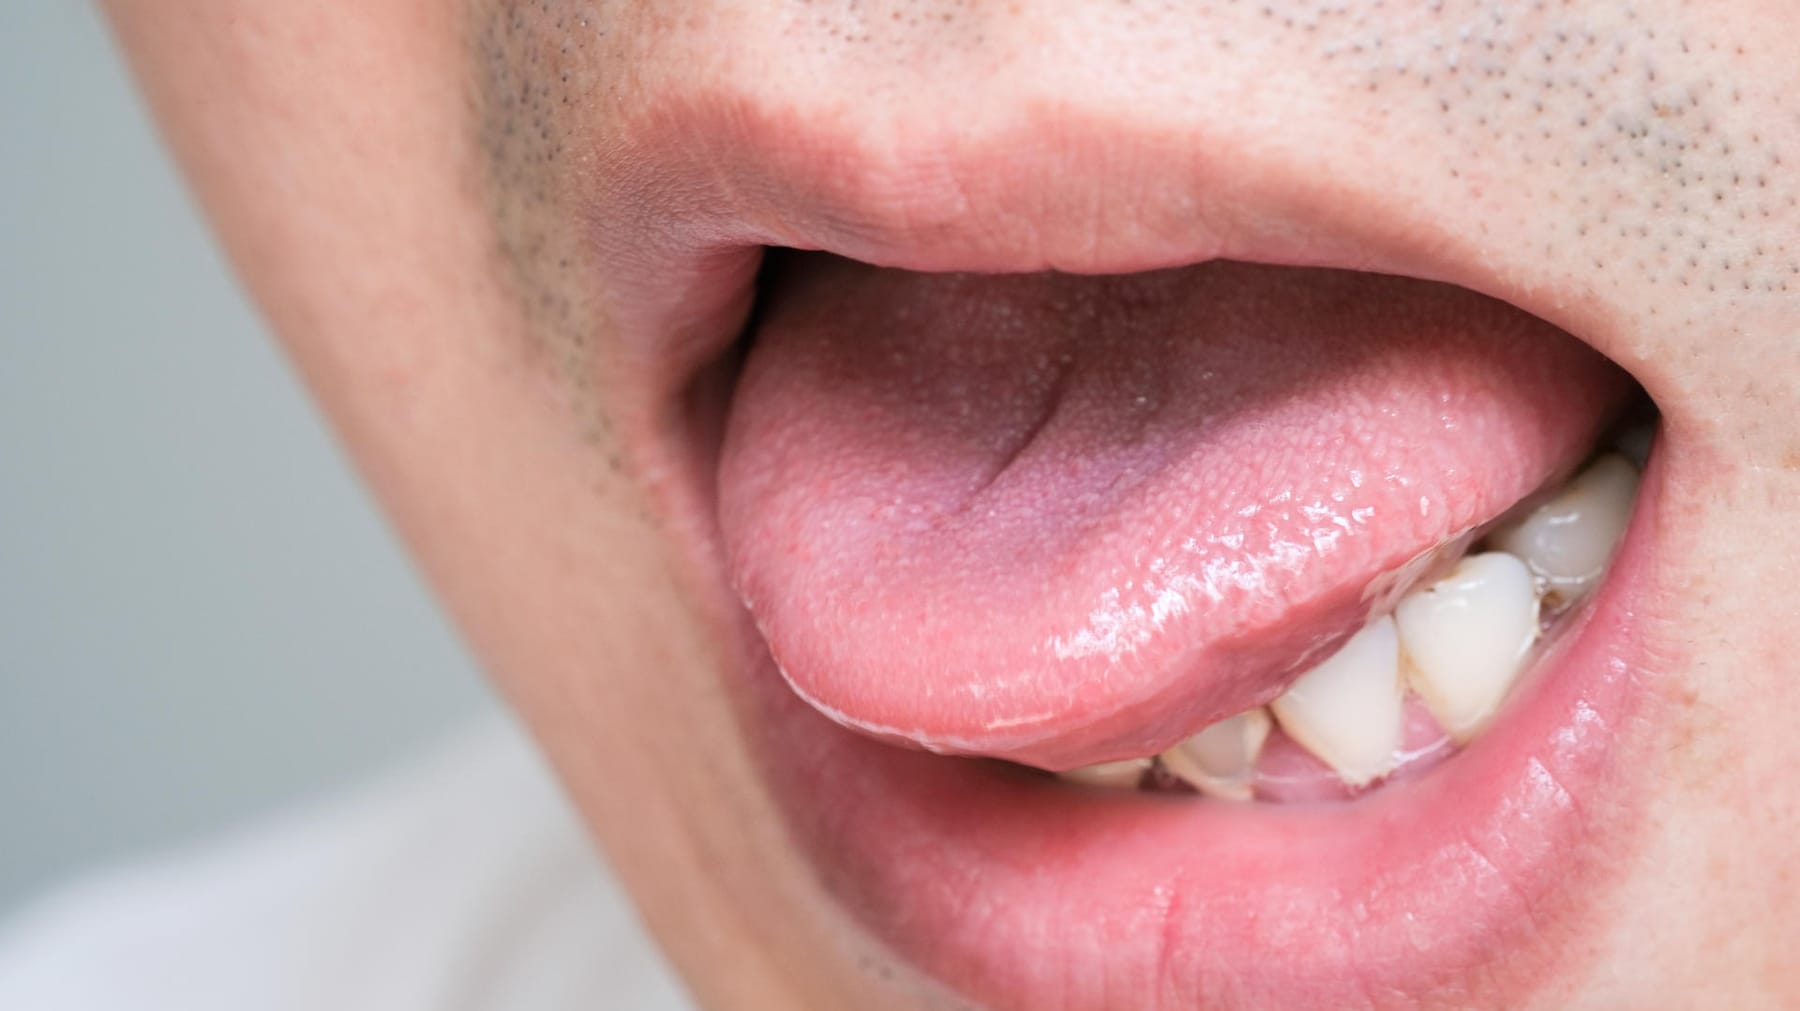 Zunge verbrannt? Dieser Trick hilft gegen den Schmerz